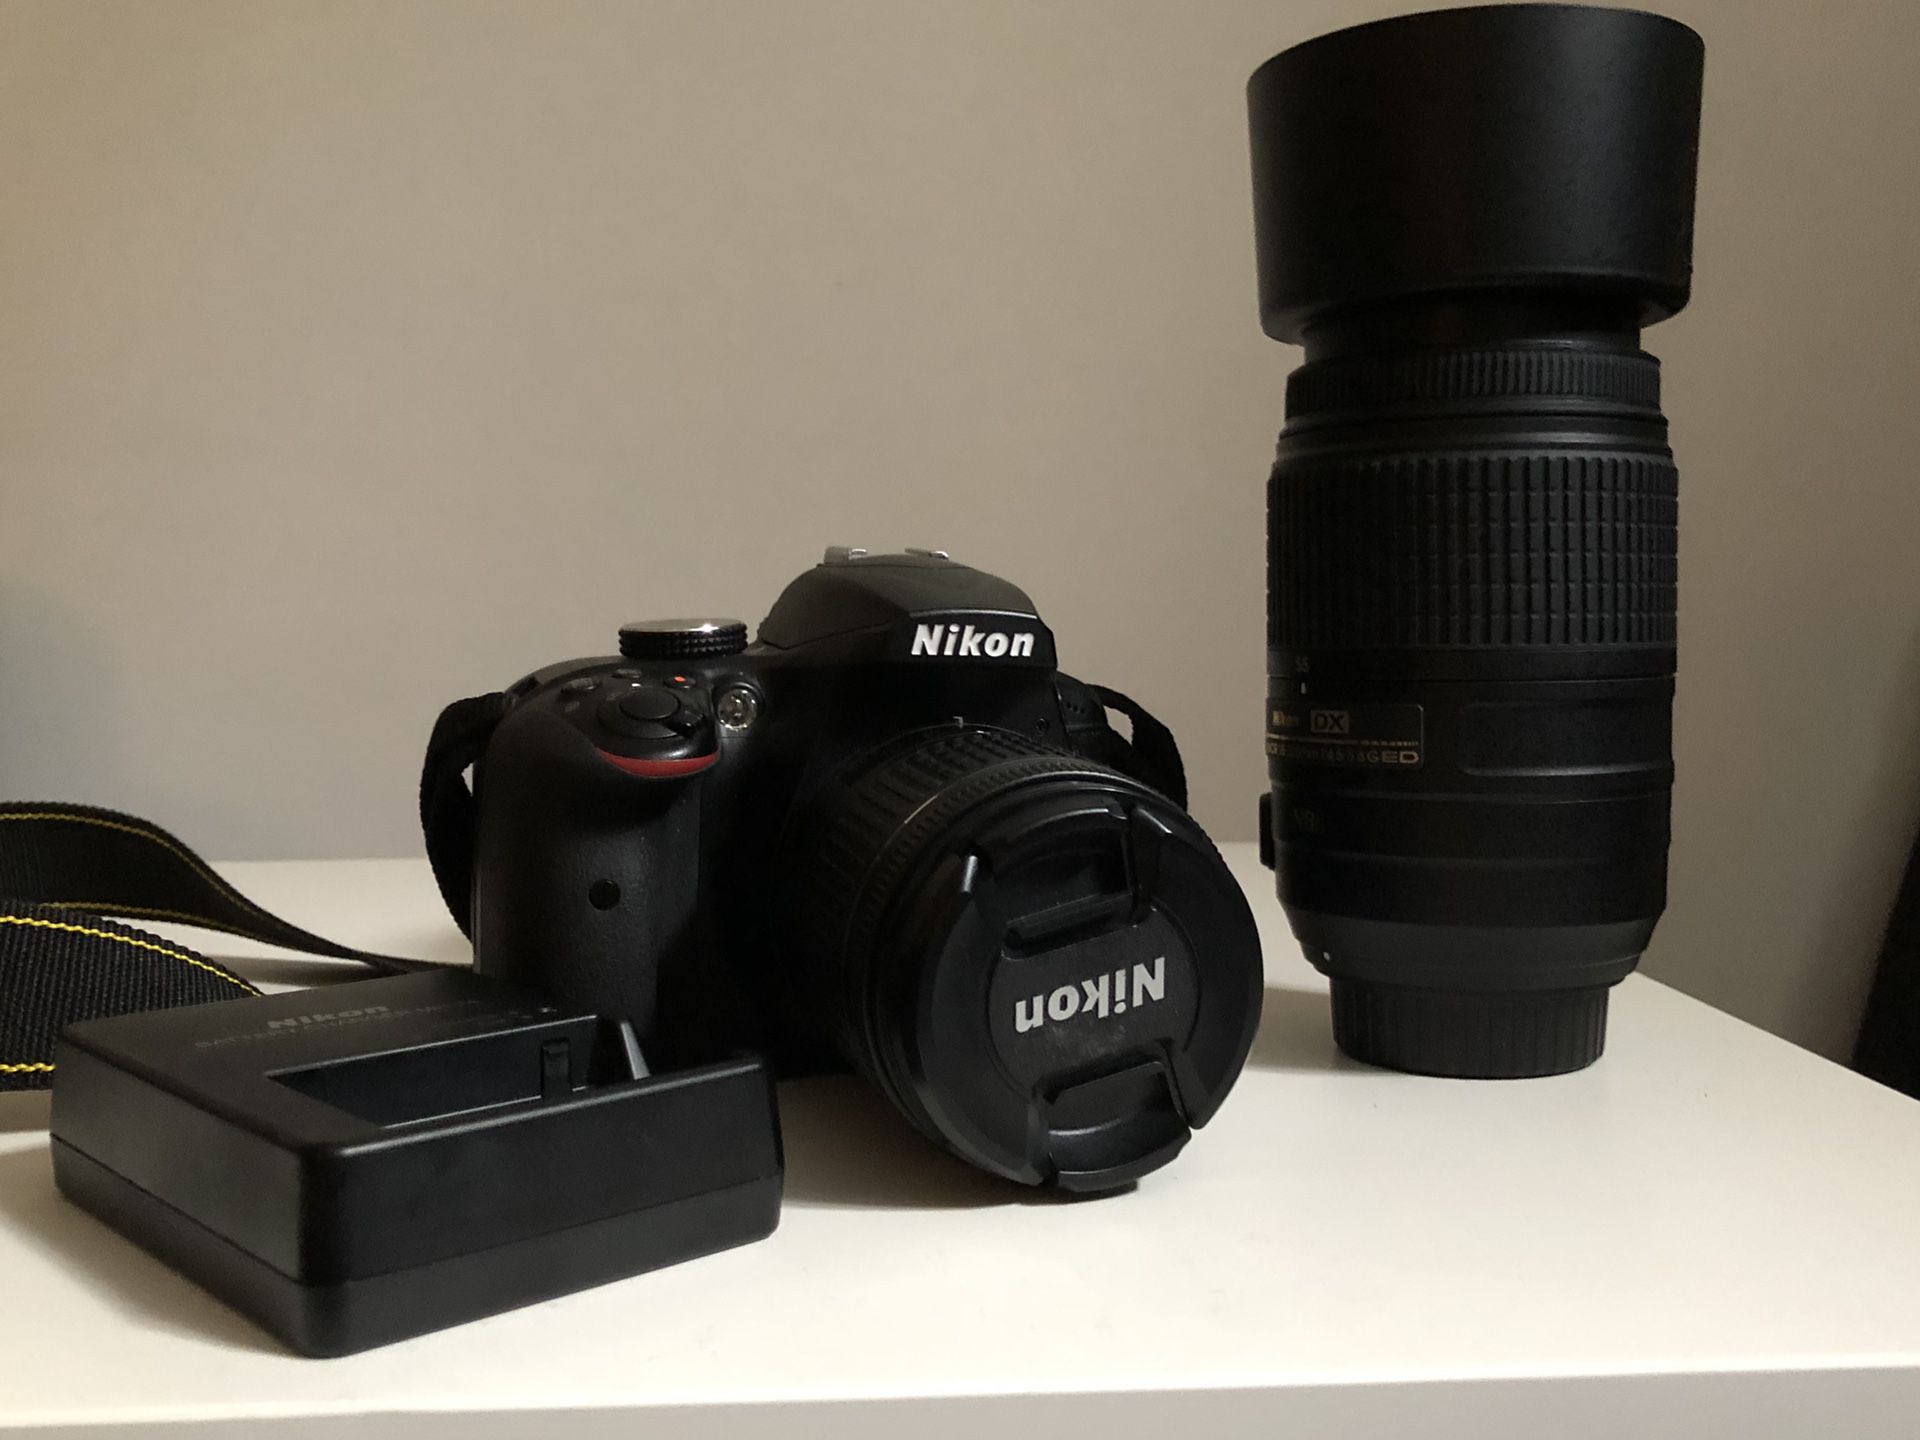 Nikon D3400 with two lens bundle